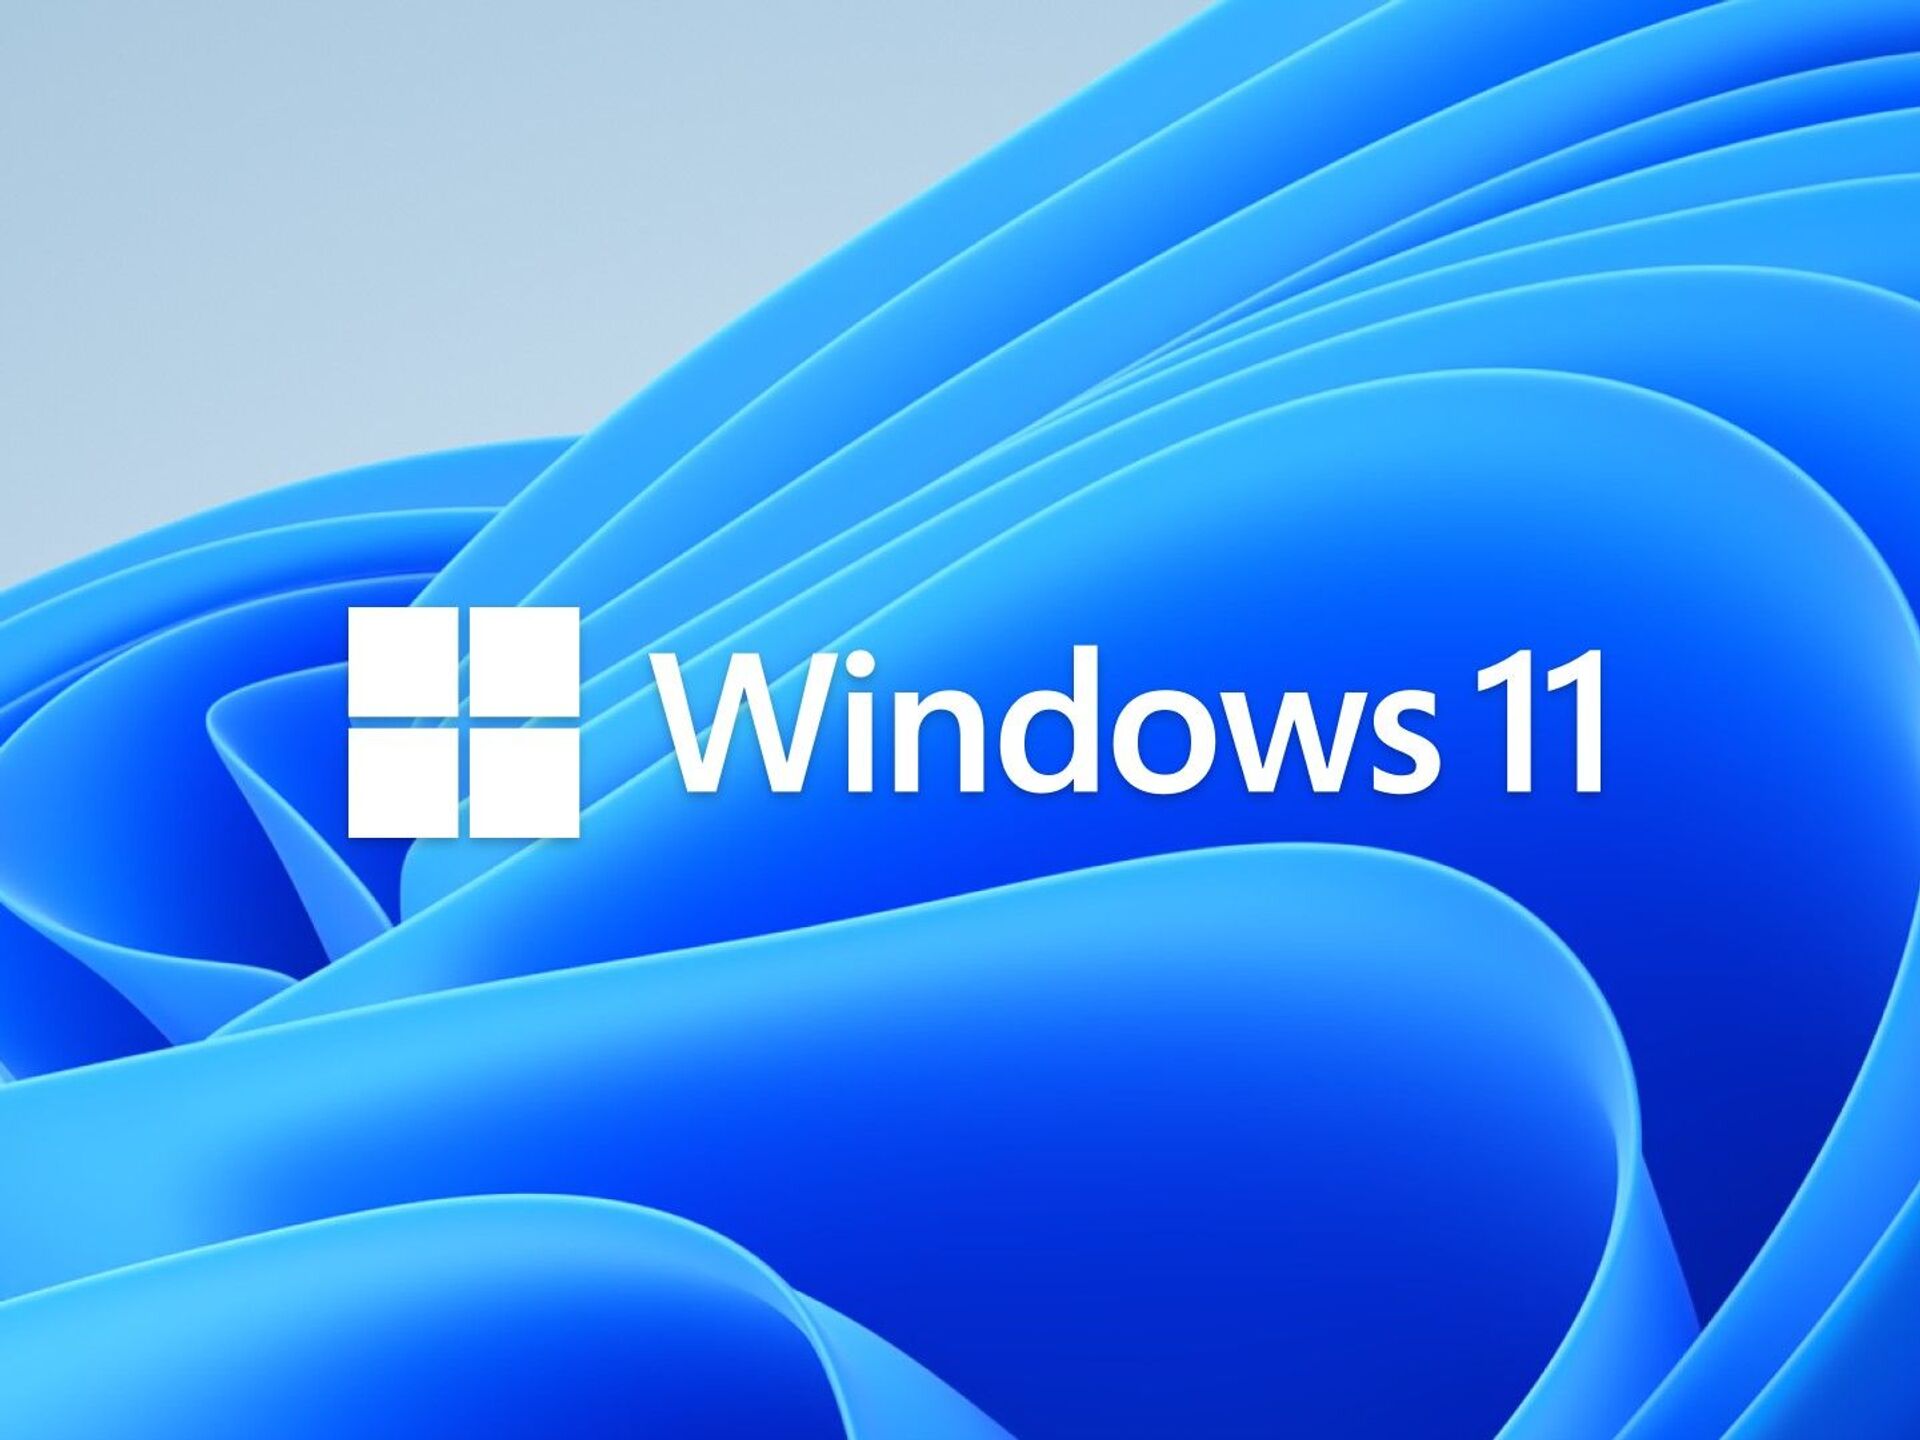 Khám phá tính năng bí mật thú vị trên Windows 11 và đón chờ những điều kỳ diệu đang chờ đợi trong tương lai. Xem thêm hình ảnh đại diện cho các tính năng mới và hấp dẫn nhất của Windows 11 ngay!